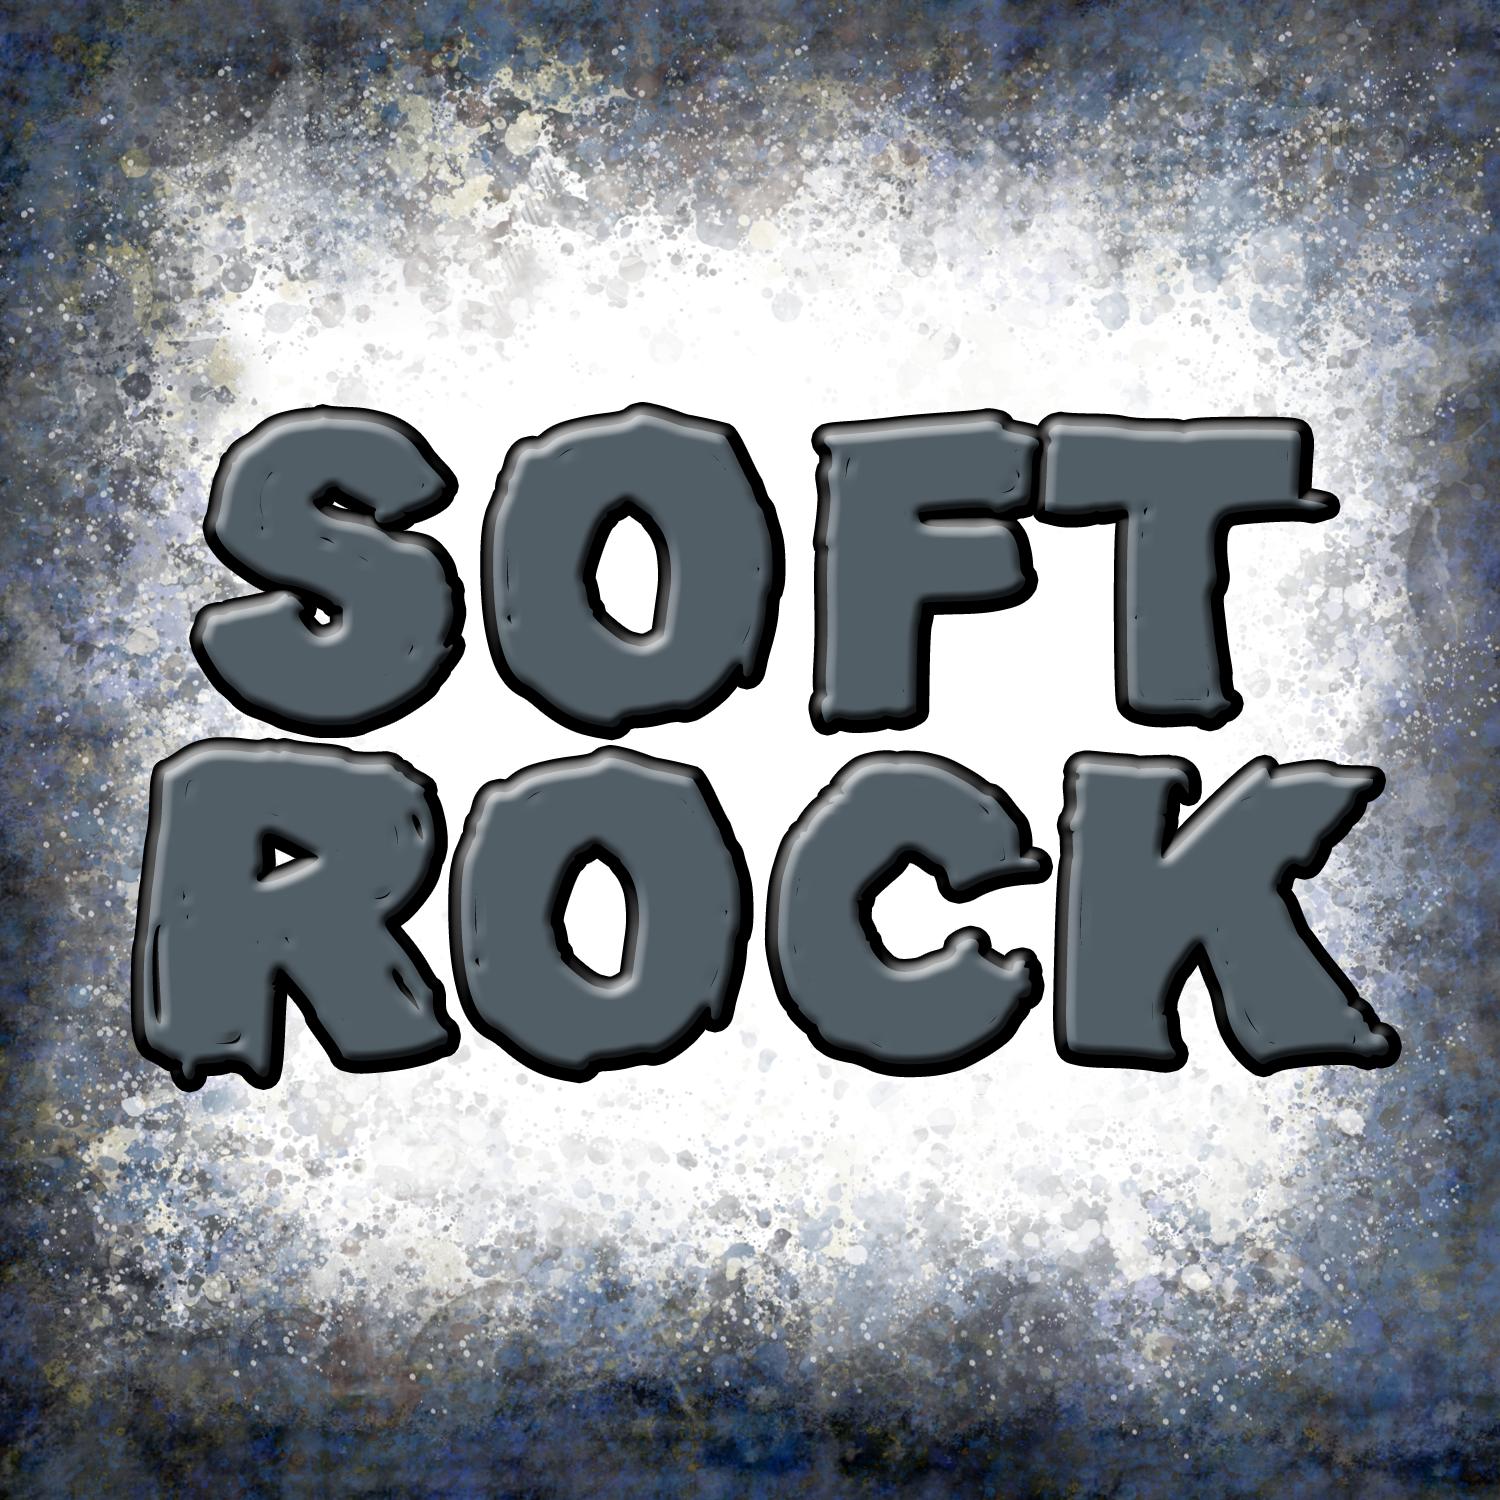 Best Soft Rock Songs